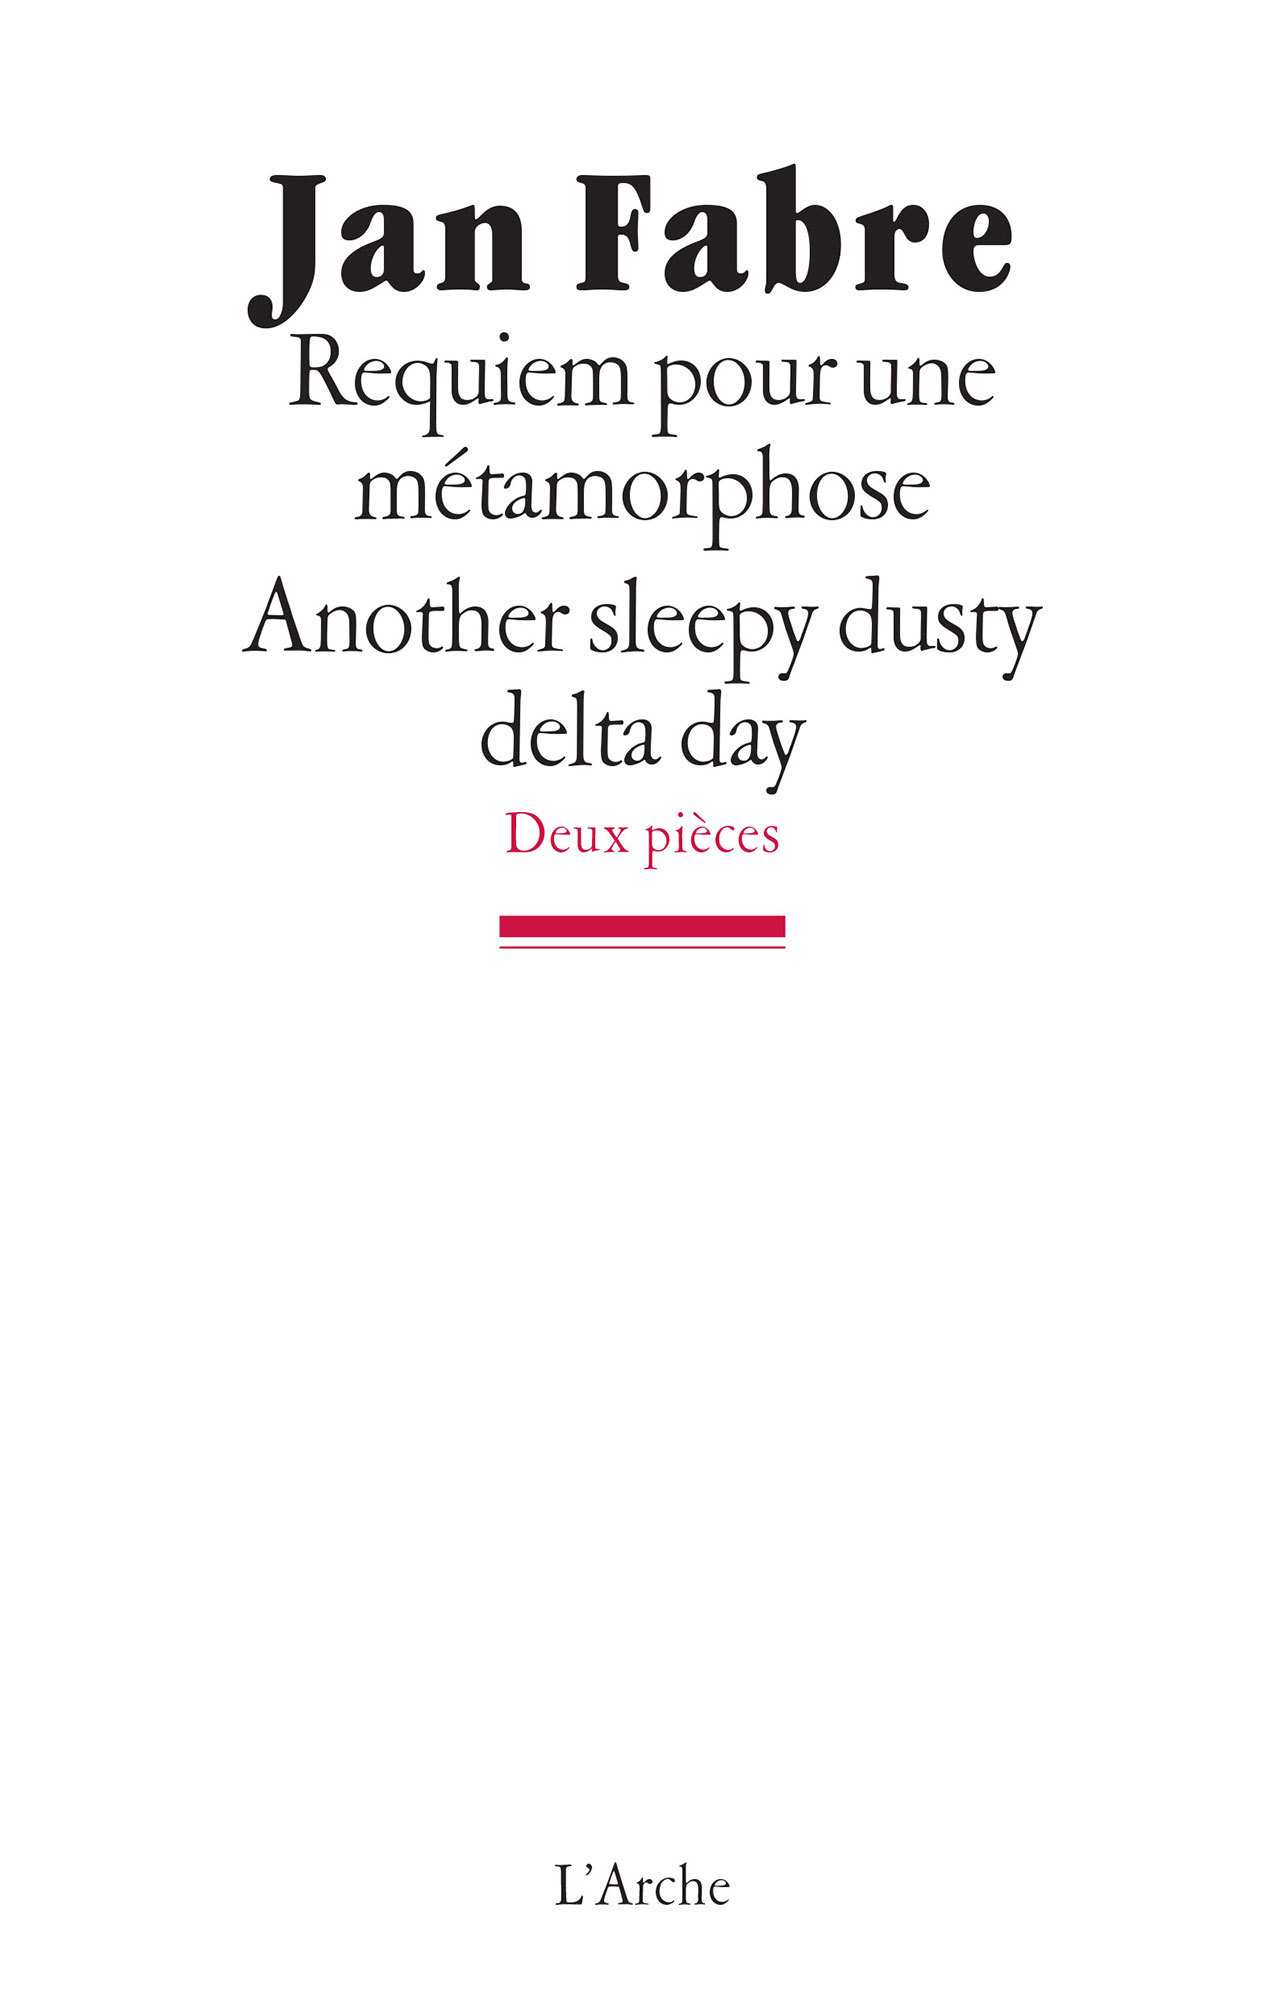 Requiem pour une métamorphose / Another sleepy, dusty, delta day (9782851816764-front-cover)